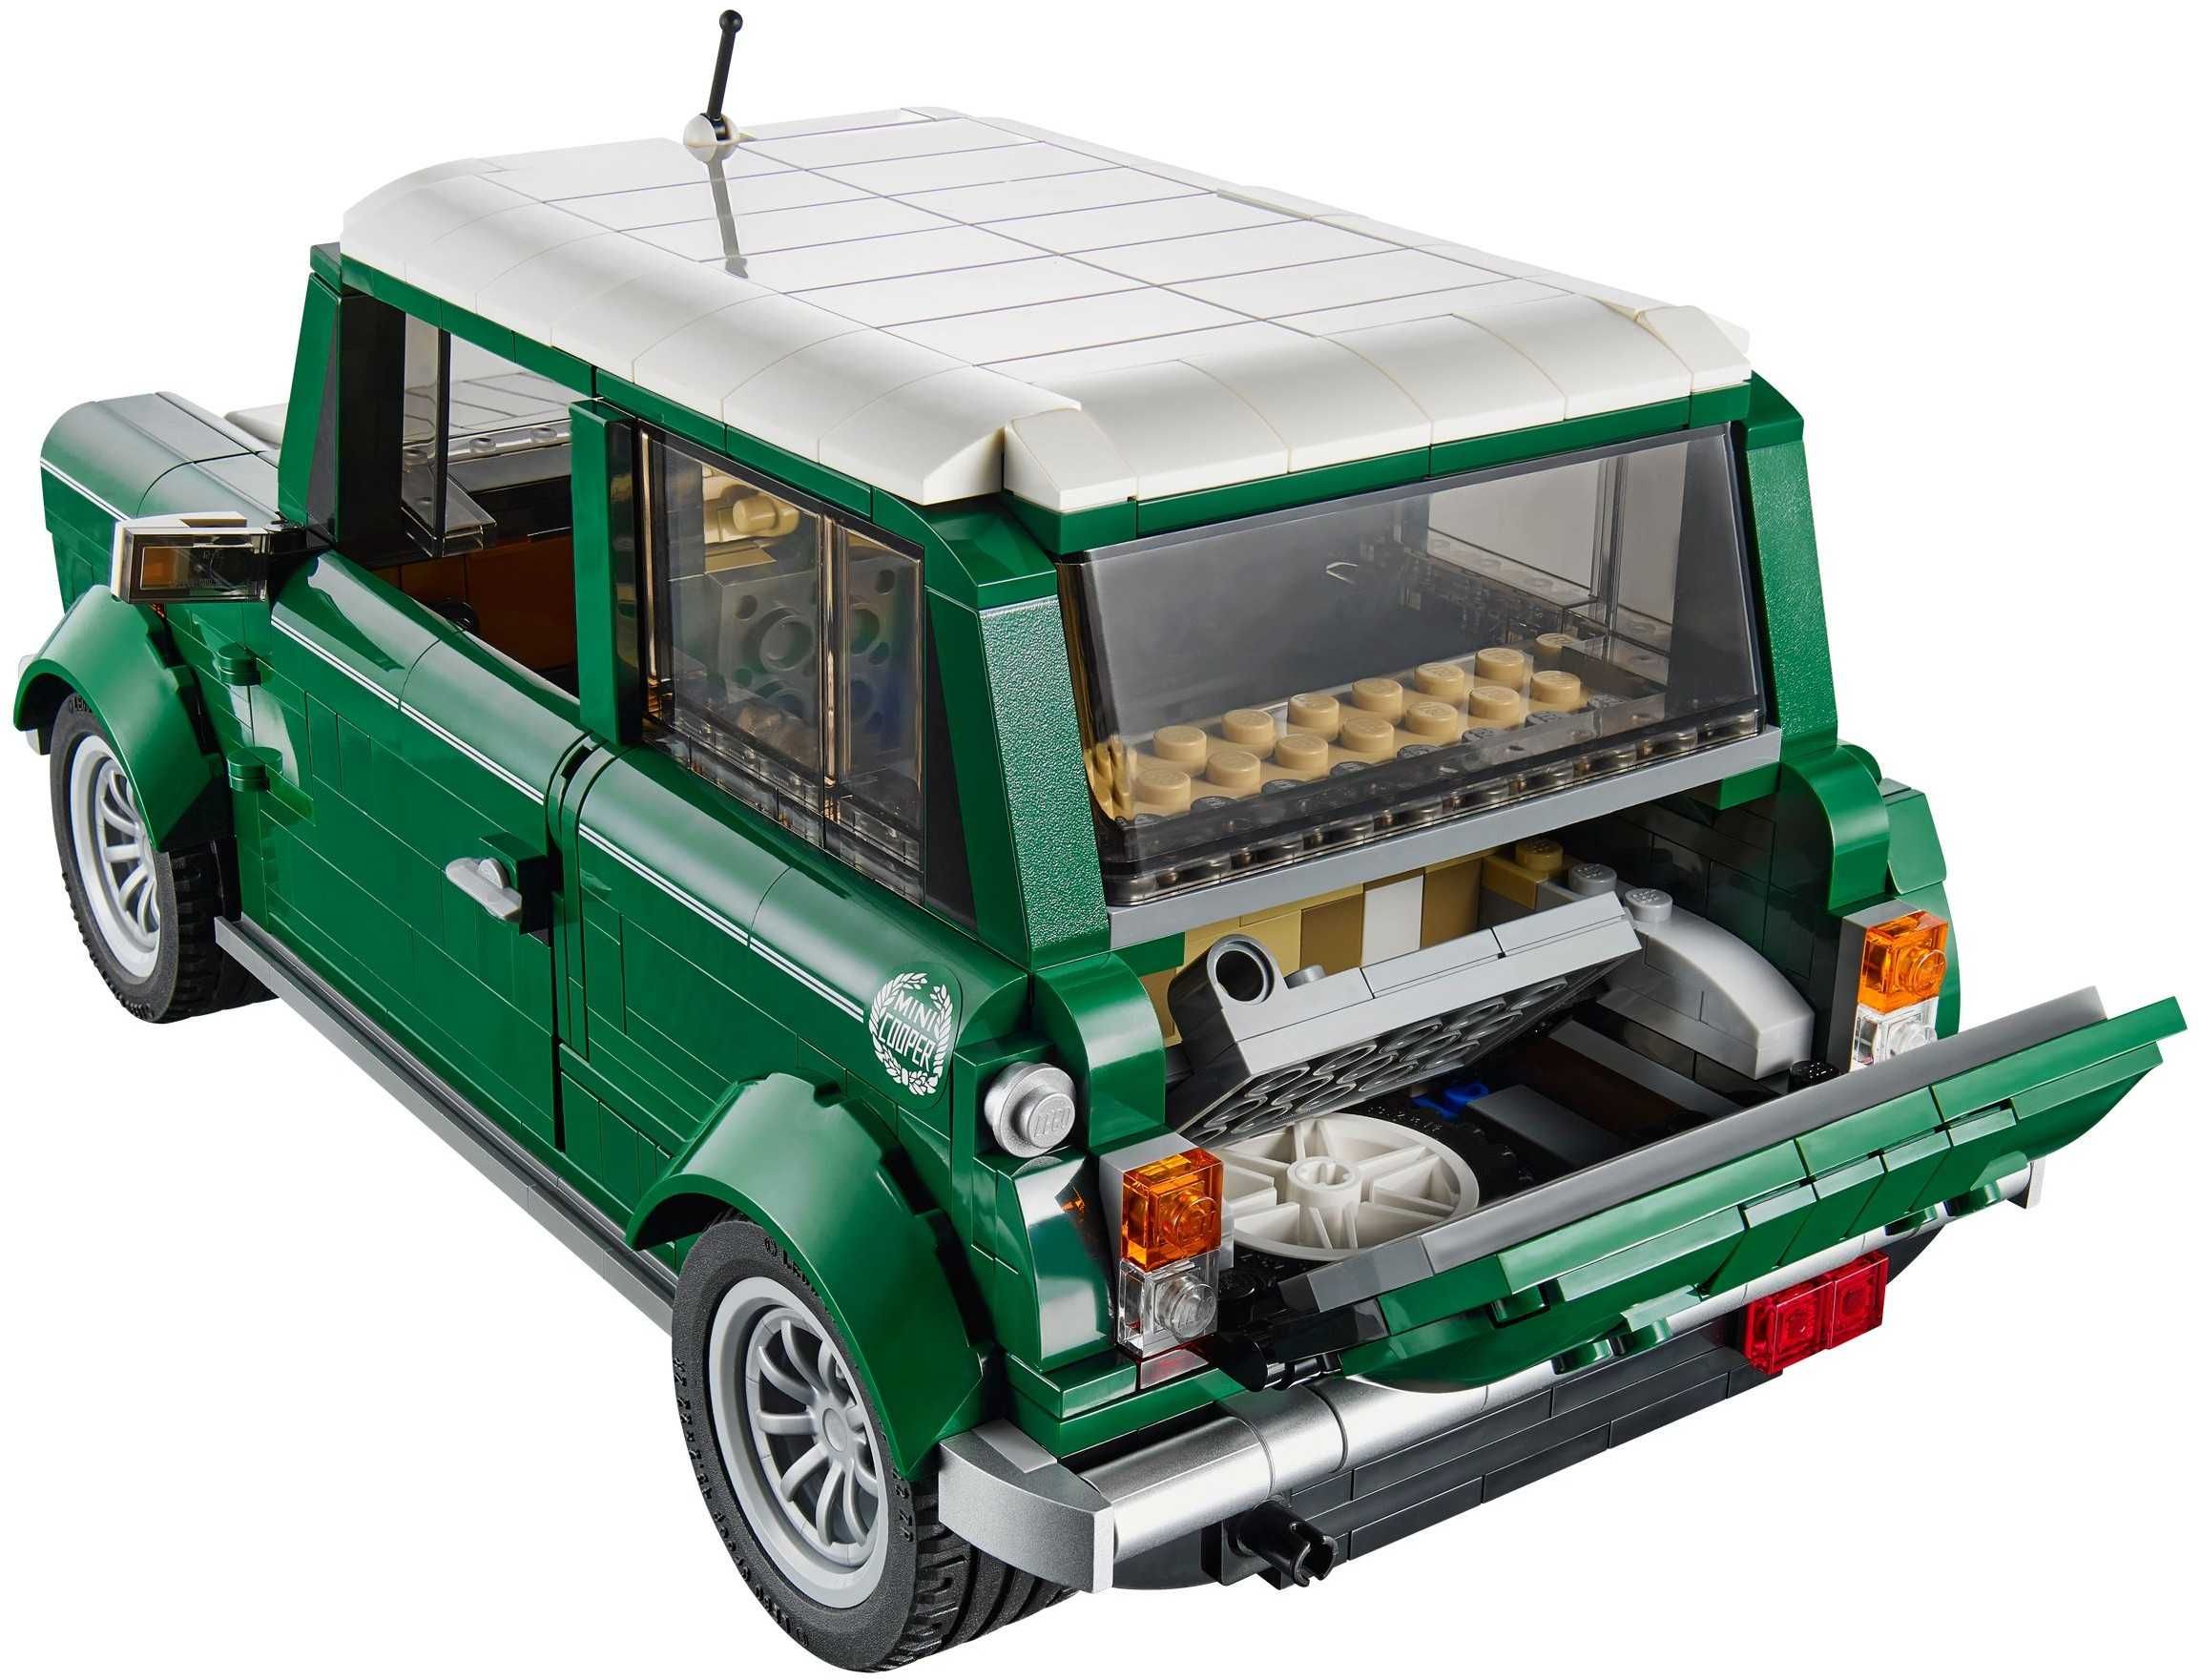 LEGO Creator Expert / Icons- 10242: MINI Cooper MK -set greu de gasit